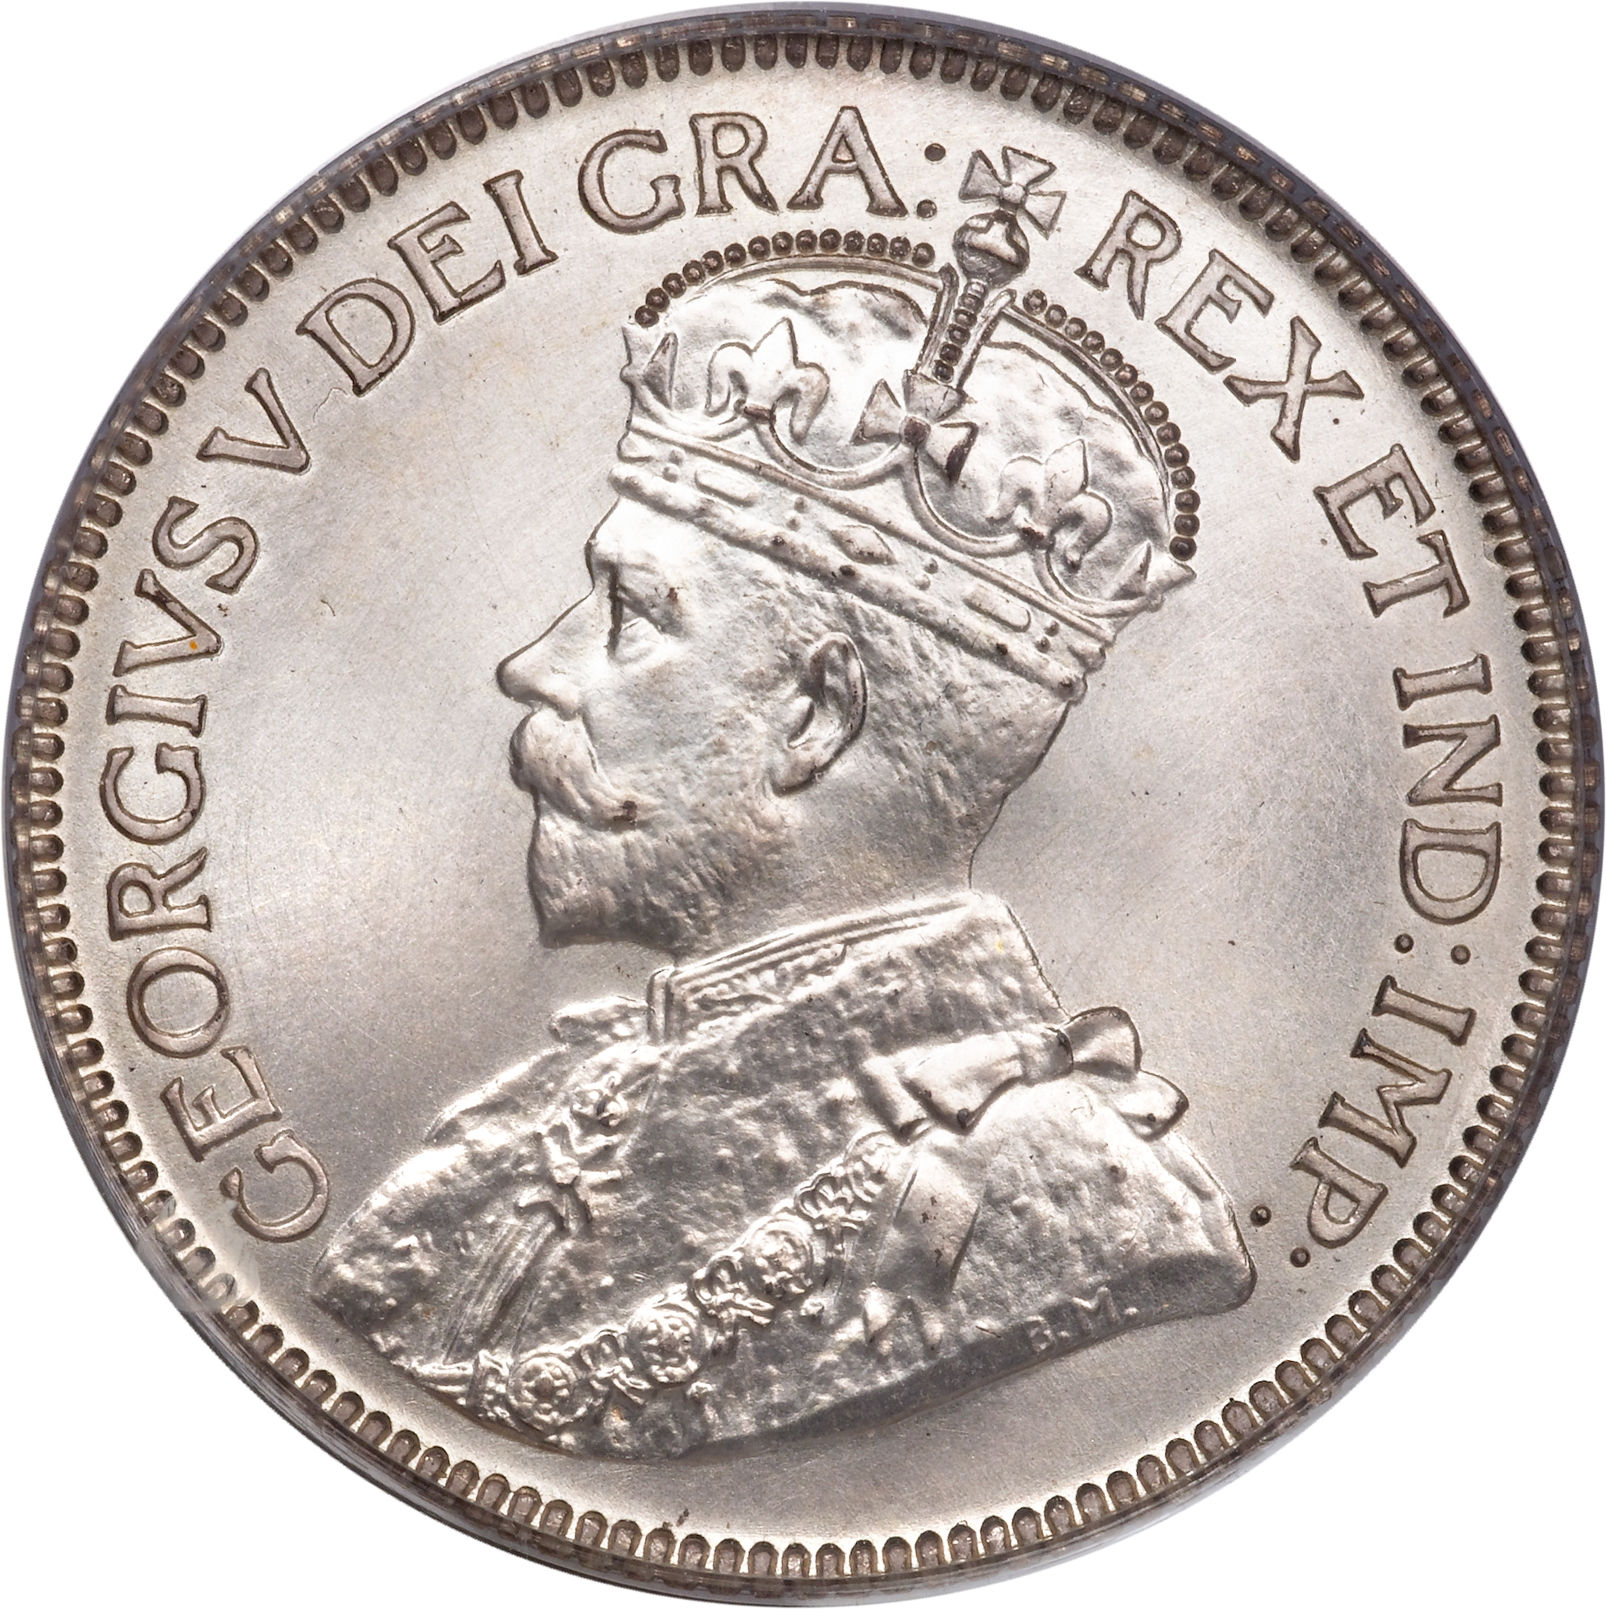 1982 proof ottawa coin royal canadian mint canada dollar elizabeth ii